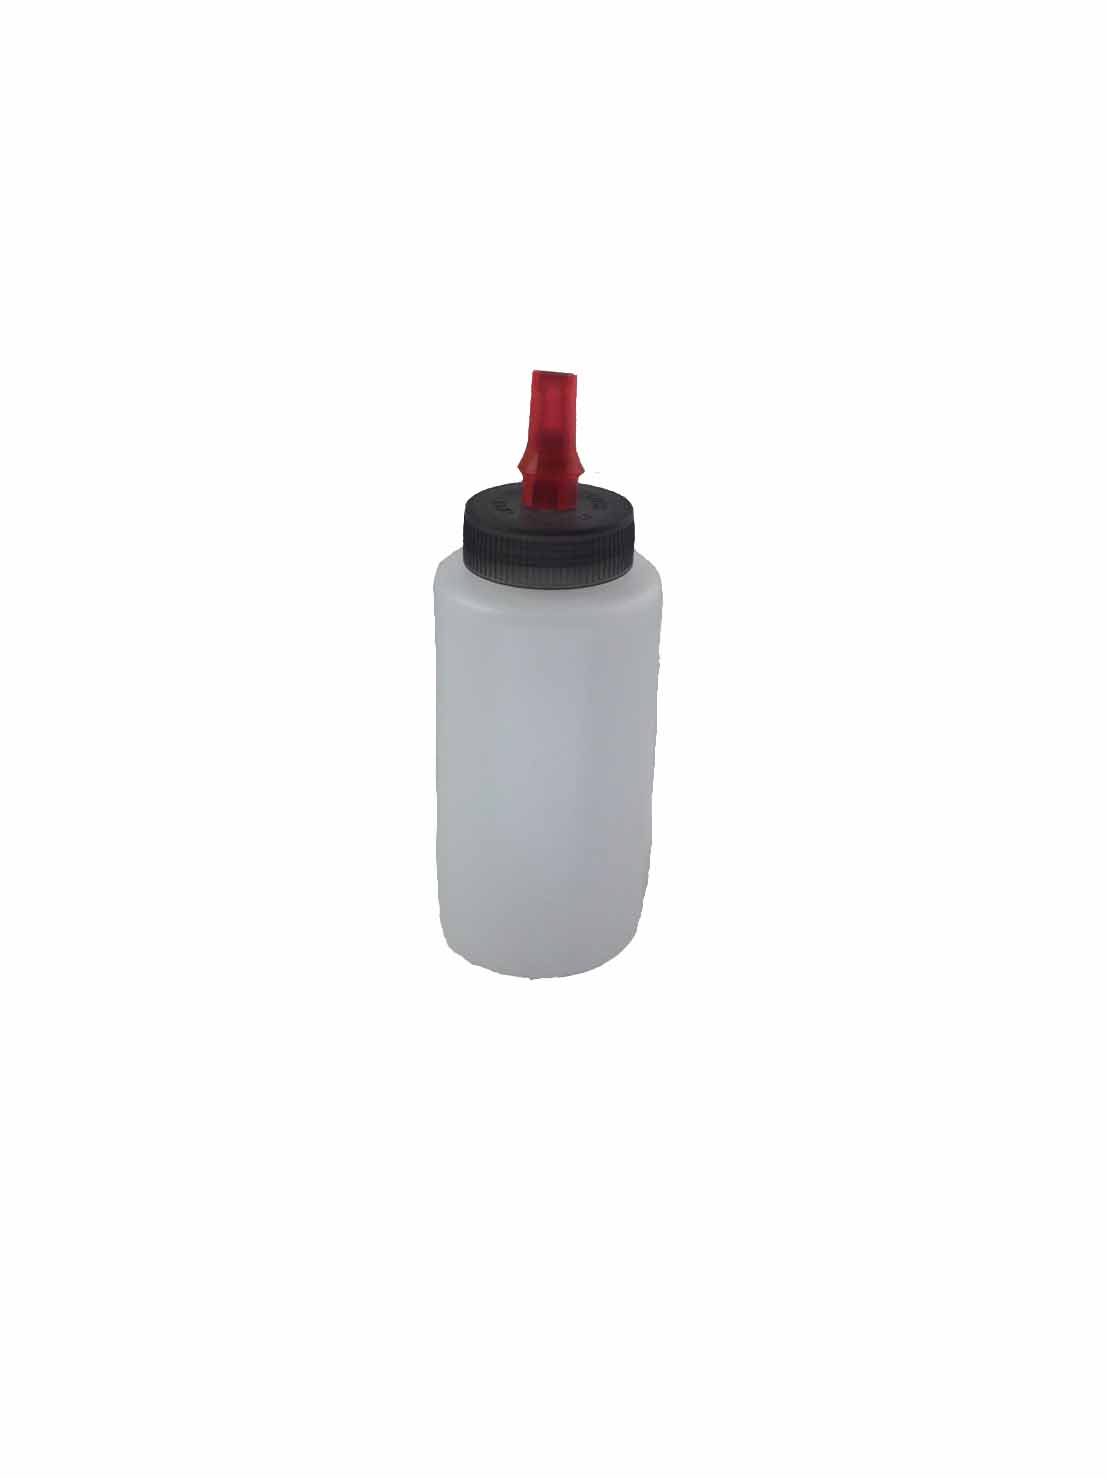 好蠟分裝罐,250ml,1個35元,高級進口瓶蓋,紅色頭